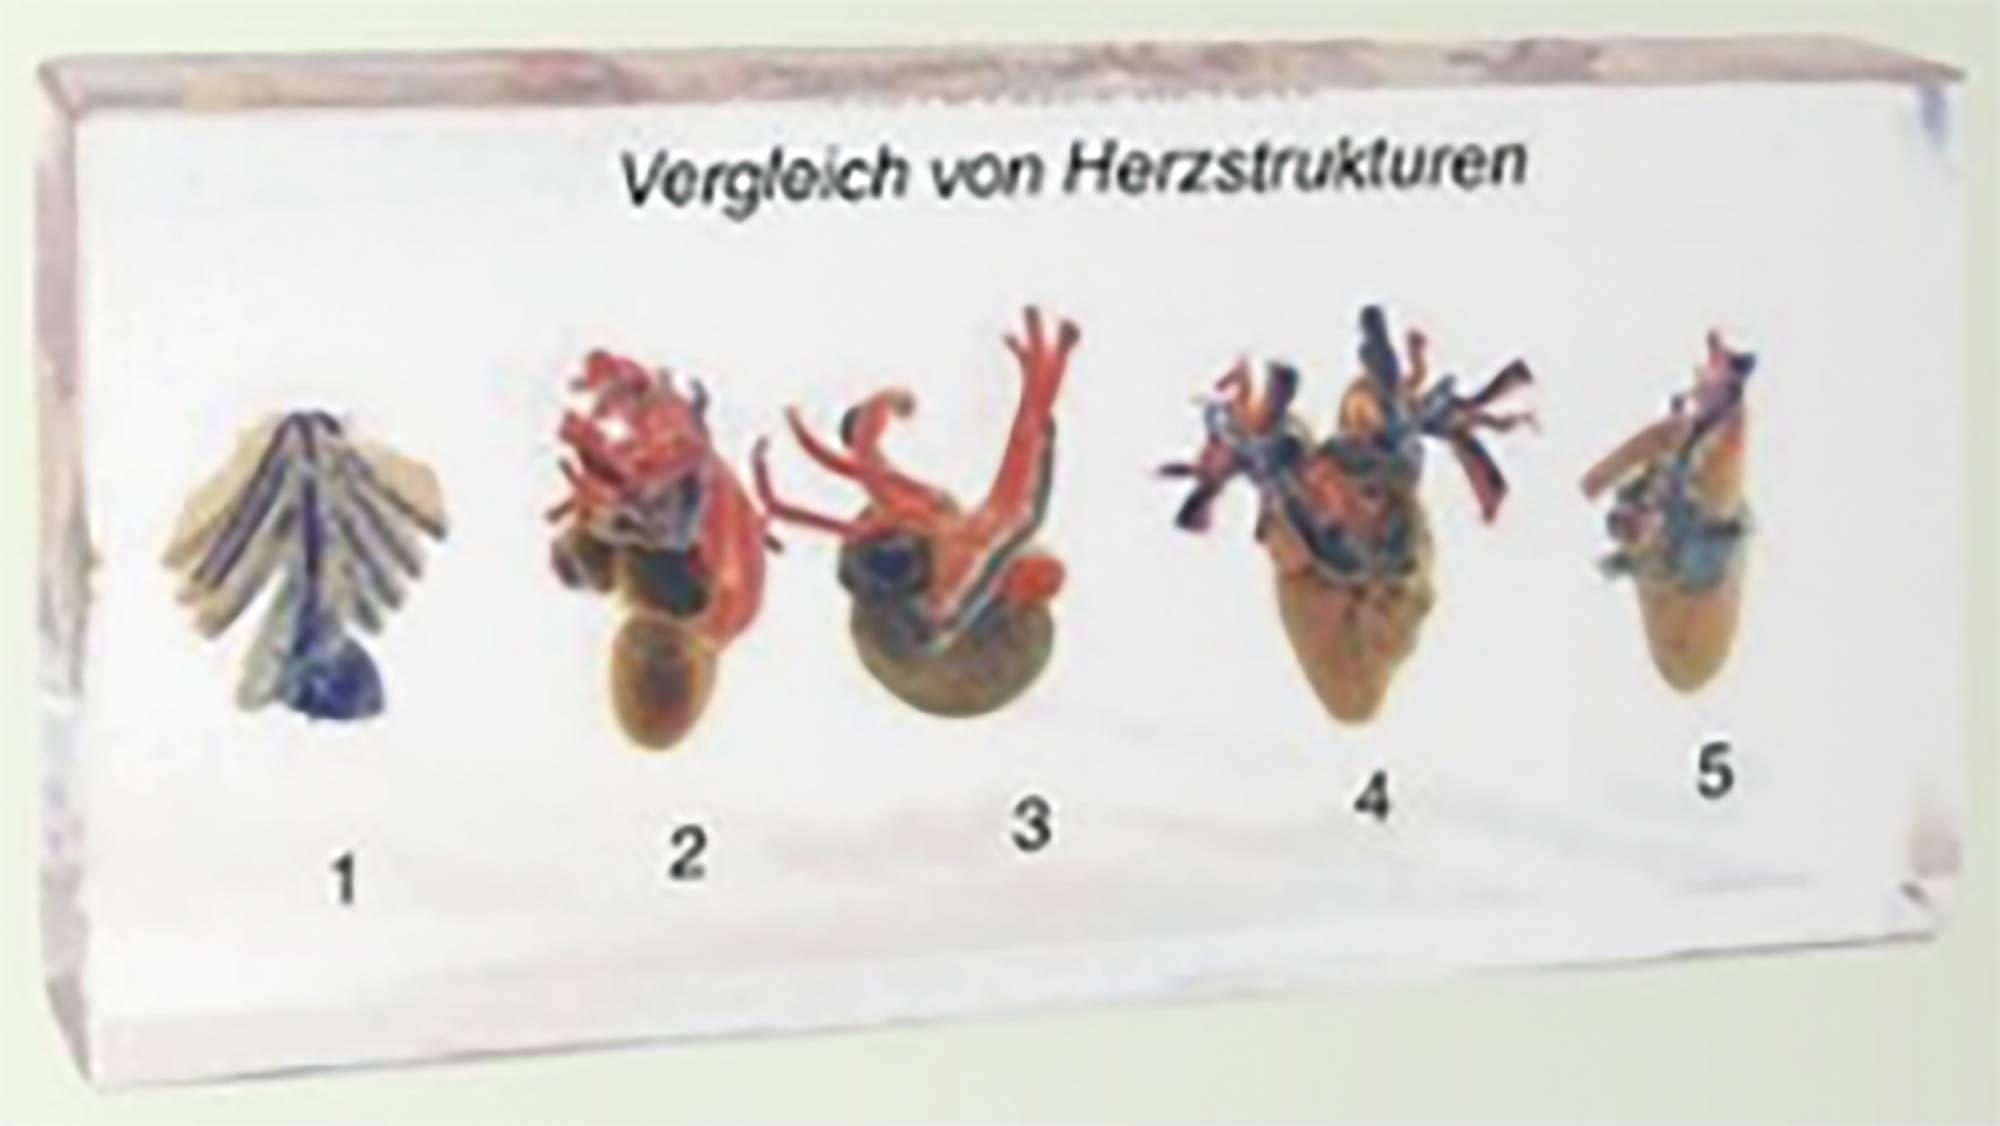 Vergleich von Herzstrukturen unterschiedlicher Organismen